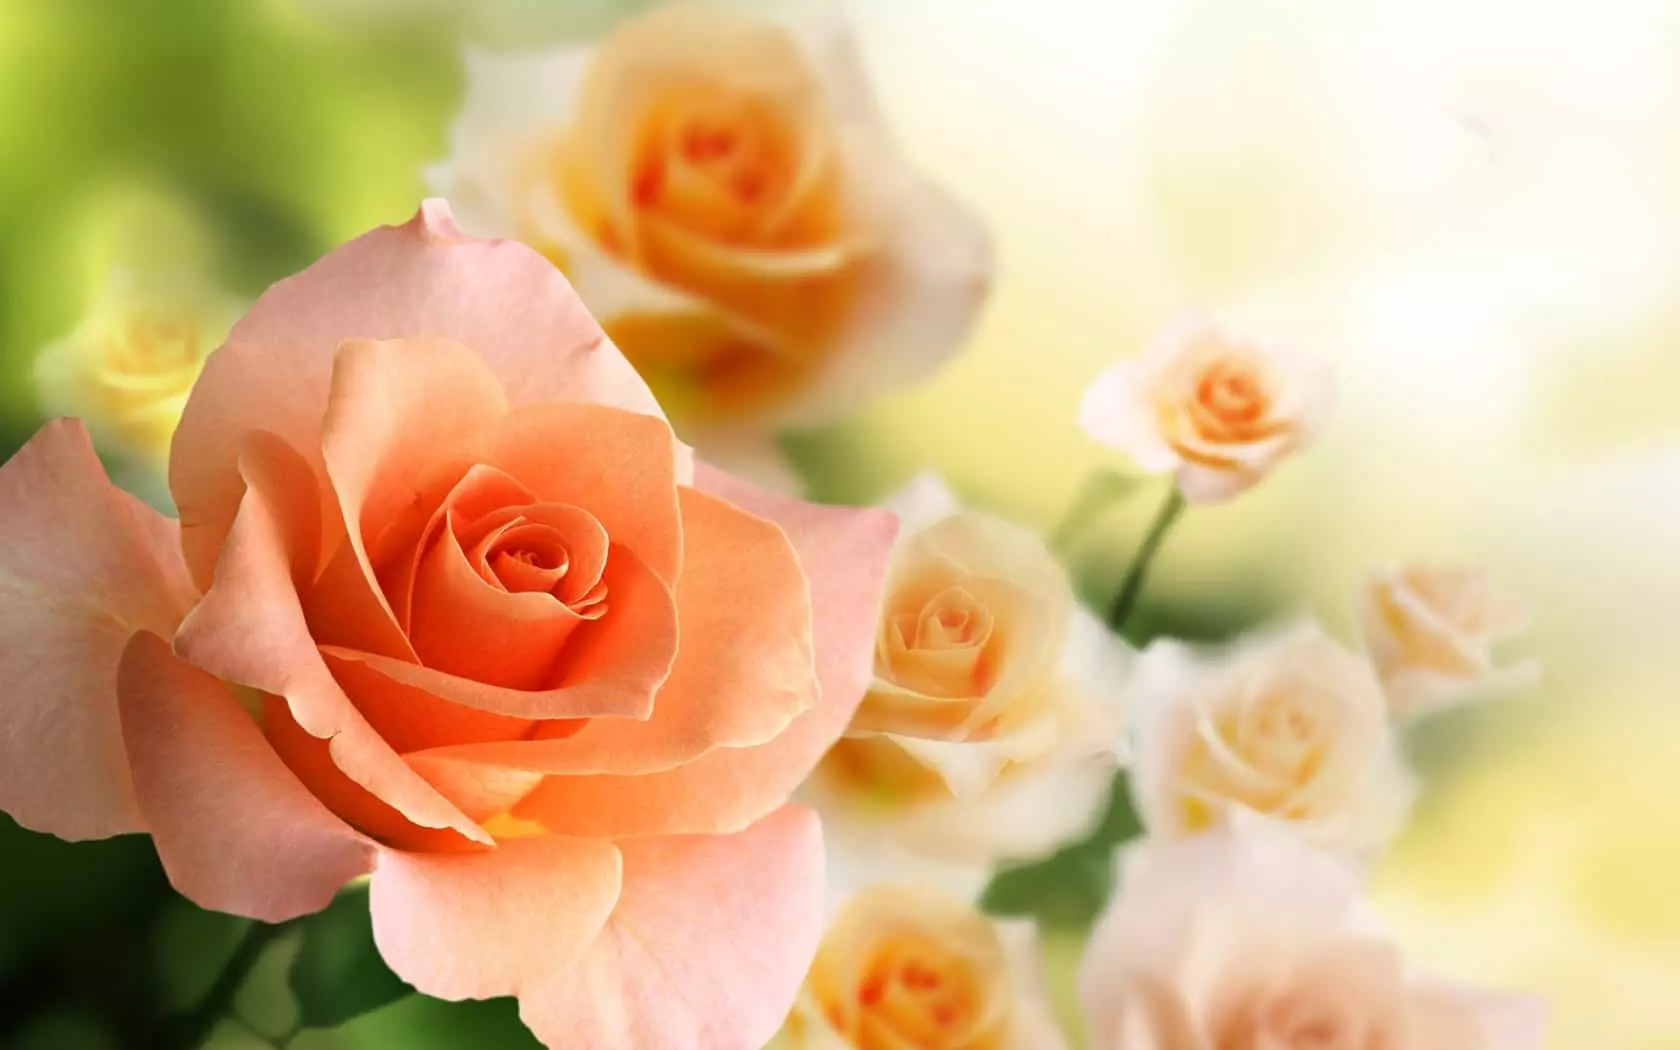 Rosen-Farbwert in einem Blumenstrauß